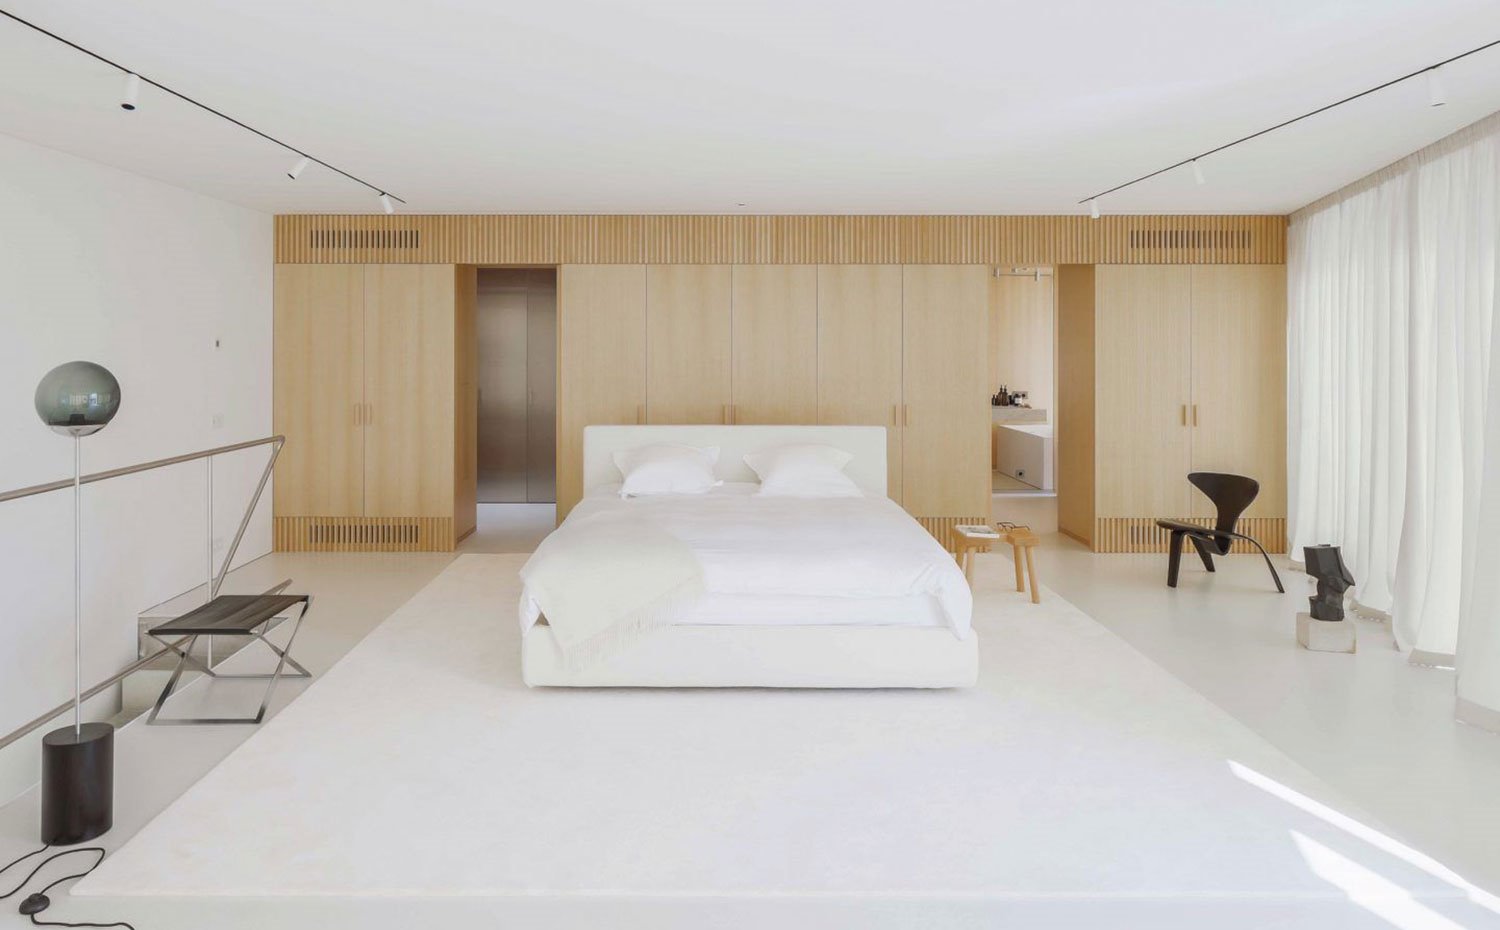 Dormitorio abierto con cama en el centro blanca, armarios de madera natural, taburete de maera, asientos en negro